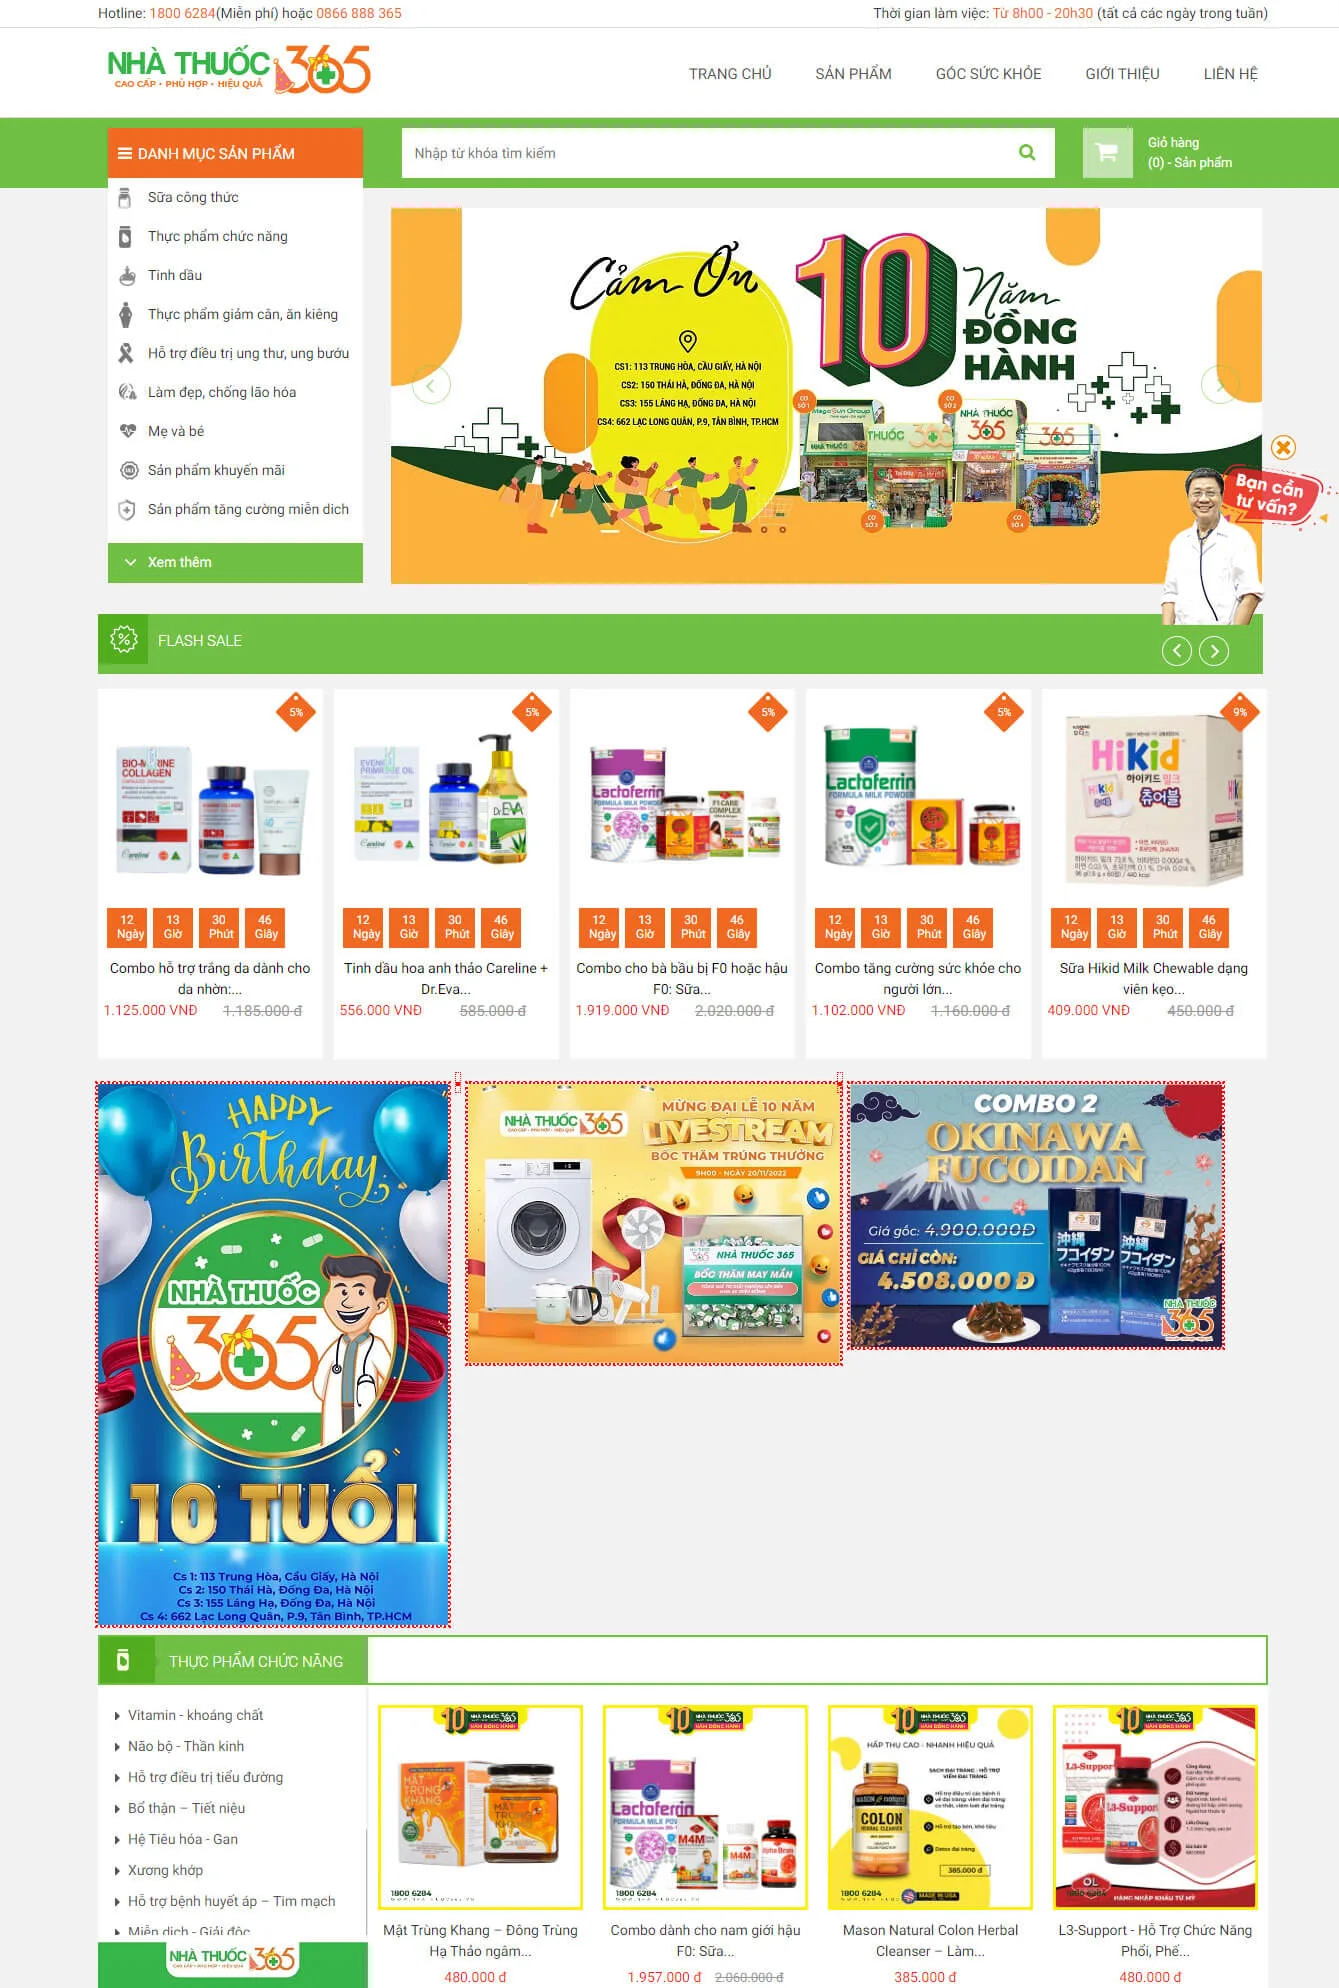 Mẫu thiết kế website nhà thuốc 365